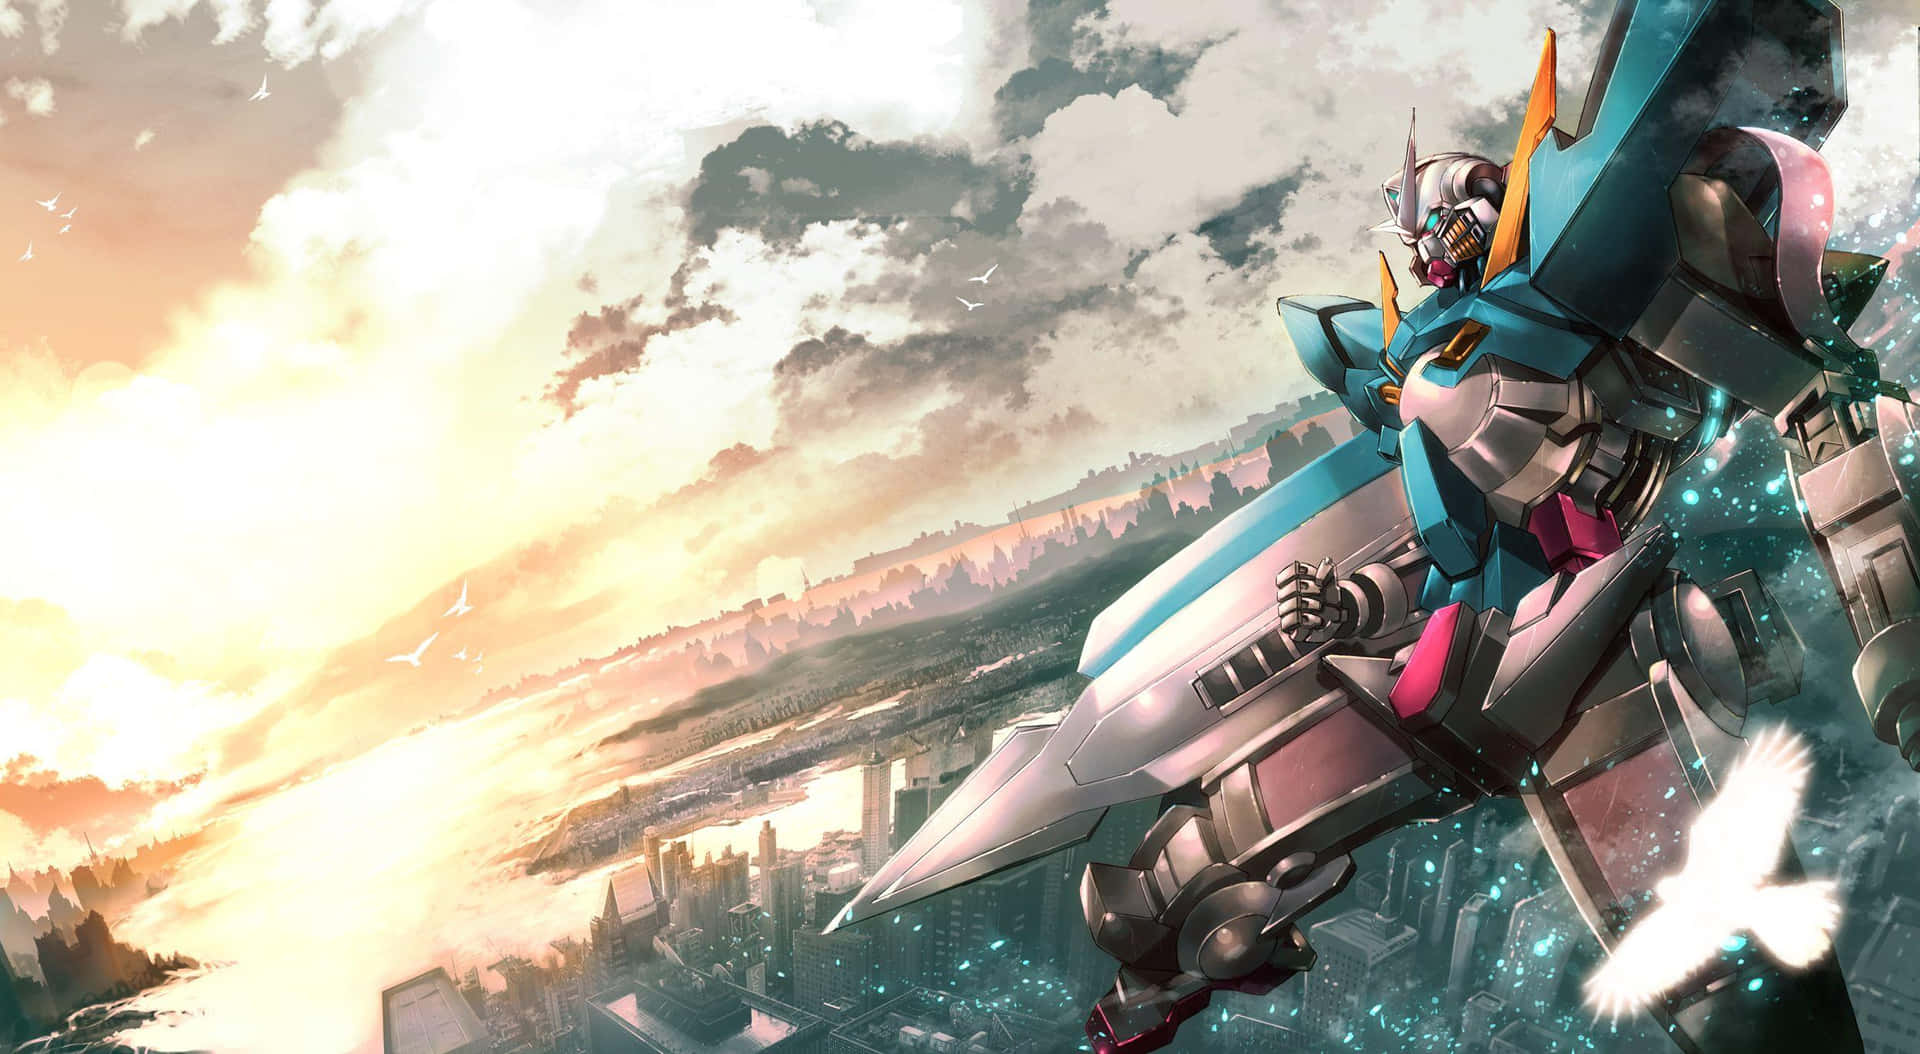 Desktophintergrund Mit Teal Gundam Wallpaper